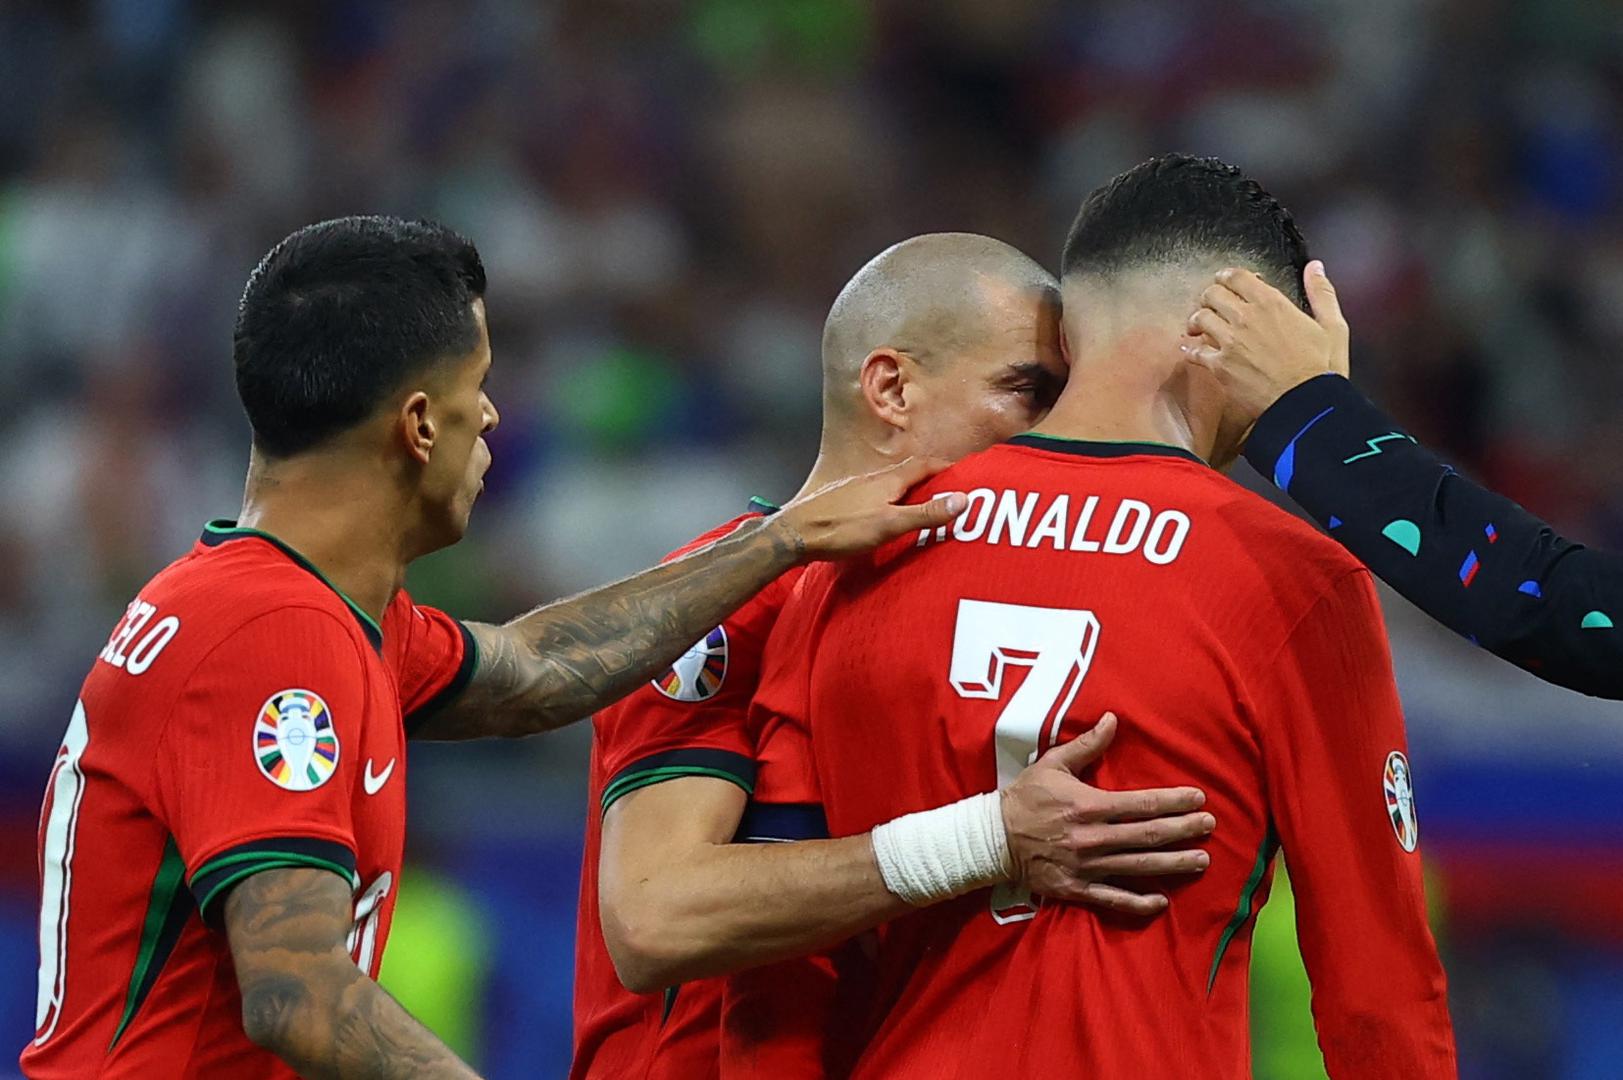 Portugalska nogometna reprezentacija prošla je u četvrtfinale Eura nakon boljeg izvođenja jedanaesteraca protiv Slovenije (3:0). Prvih 120 minuta igre završilo je bez golova